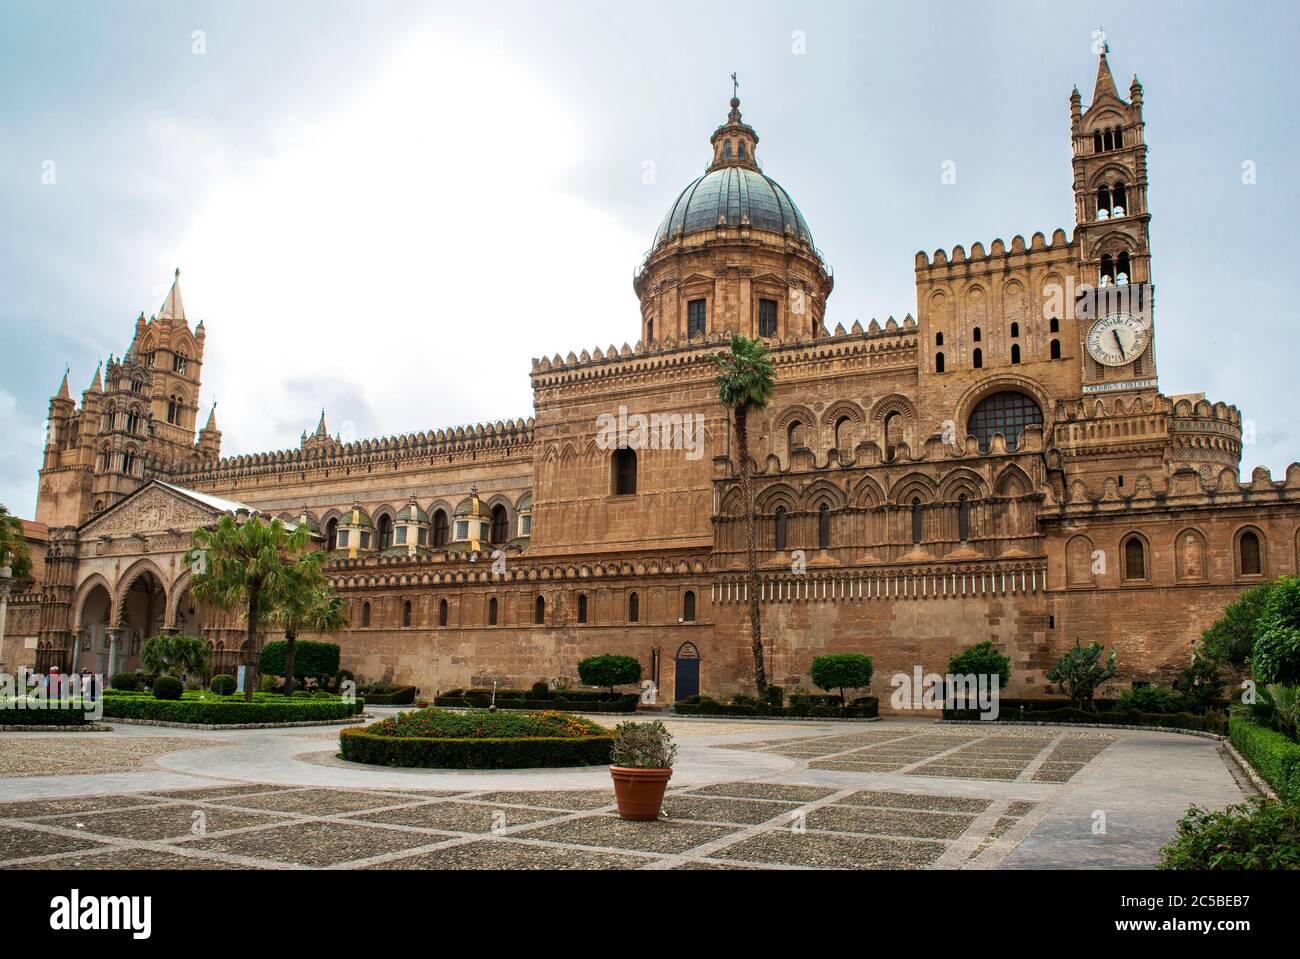 La cathédrale de Palerme est l'un des plus importants monuments architecturaux de Sicile; construite en 1184 par les Normands sur une mosquée musulmane, Sicile, Italie Banque D'Images